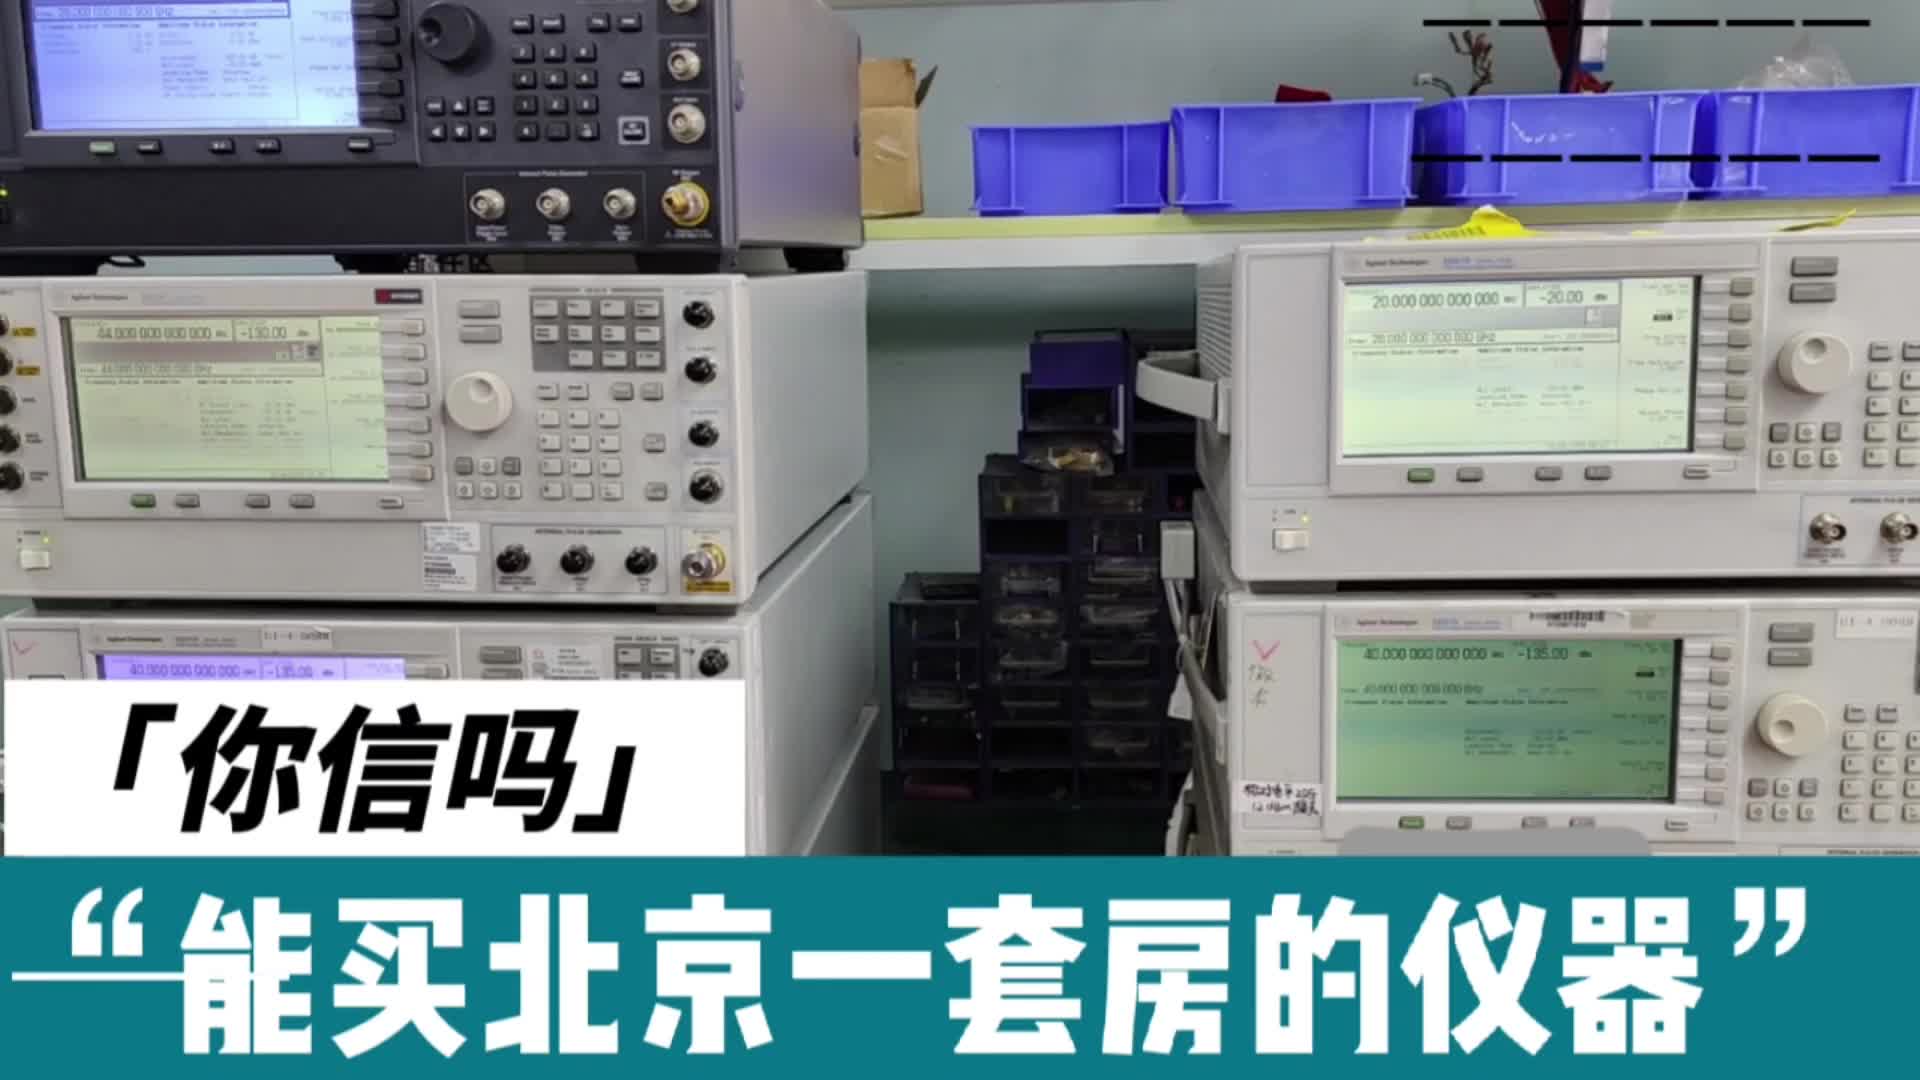 新接修的这批仪器，够买北京一套房了，懂行的进来看#信号发生器 